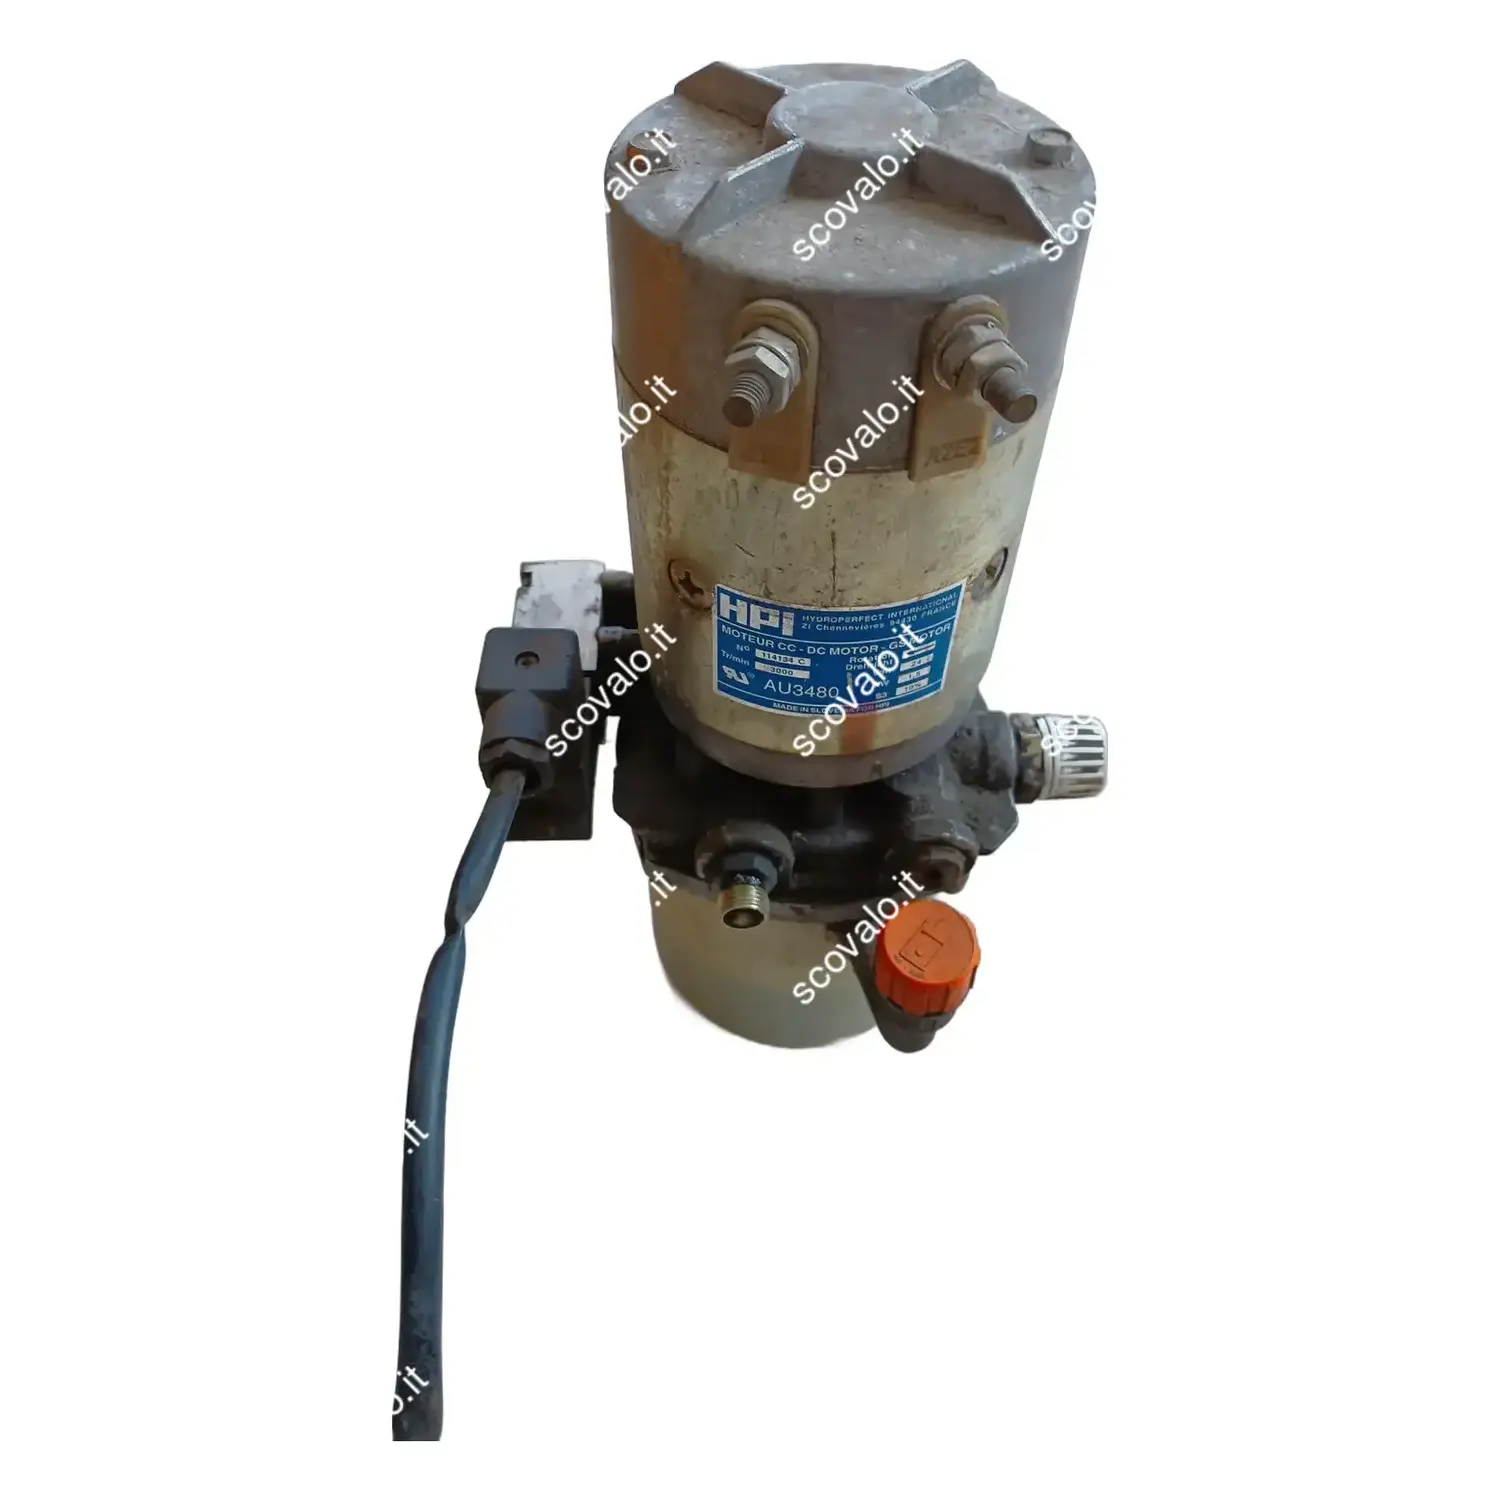 immagine del prodotto pompa idraulica carrello muletto transpallet elettrico 24V 1,5Kw Jungheinrich usato